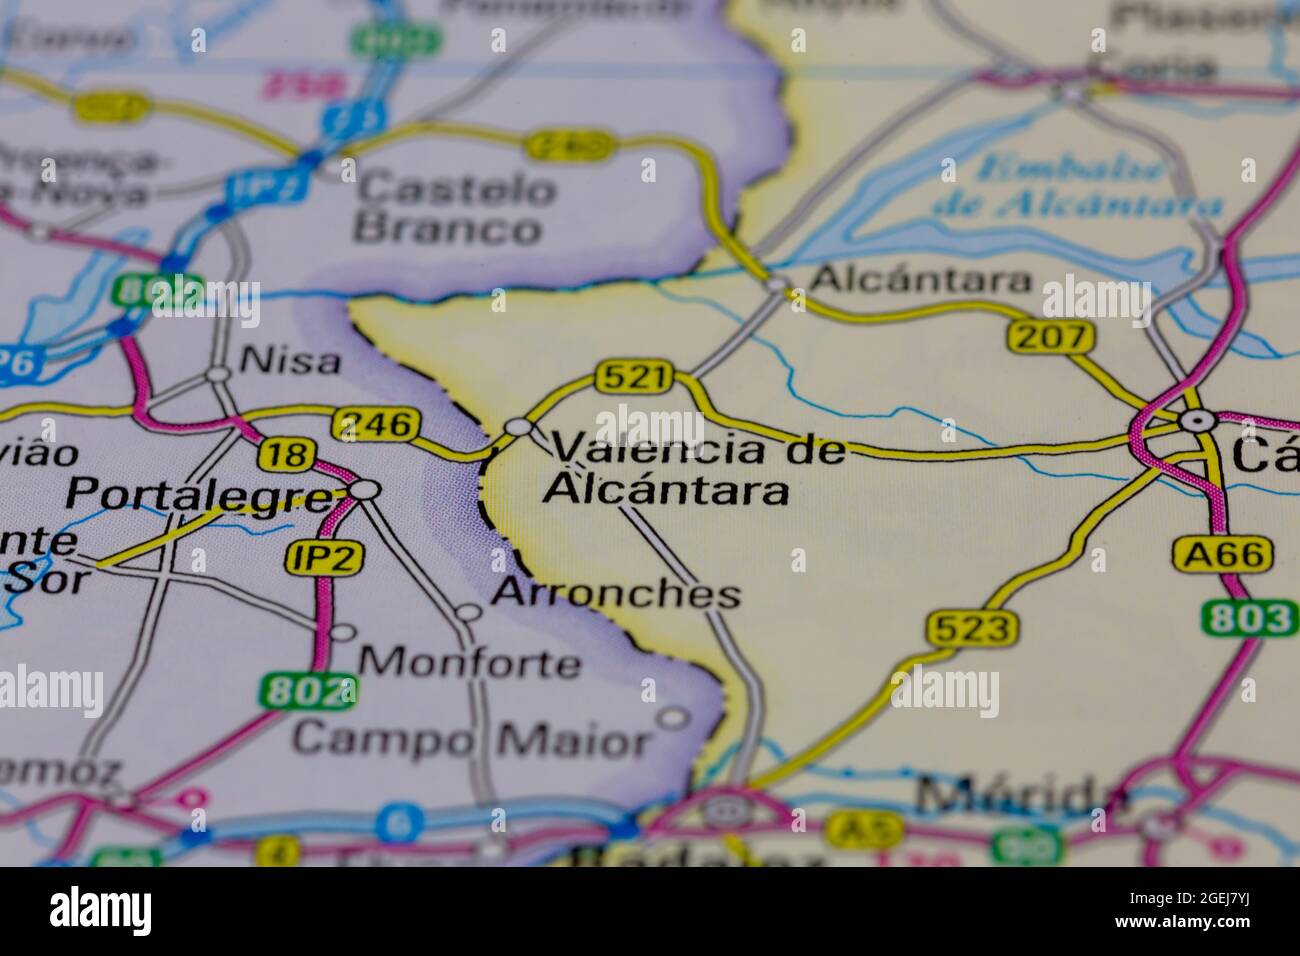 Valence de Alcantara Espagne sur une carte routière ou une carte de géographie Banque D'Images